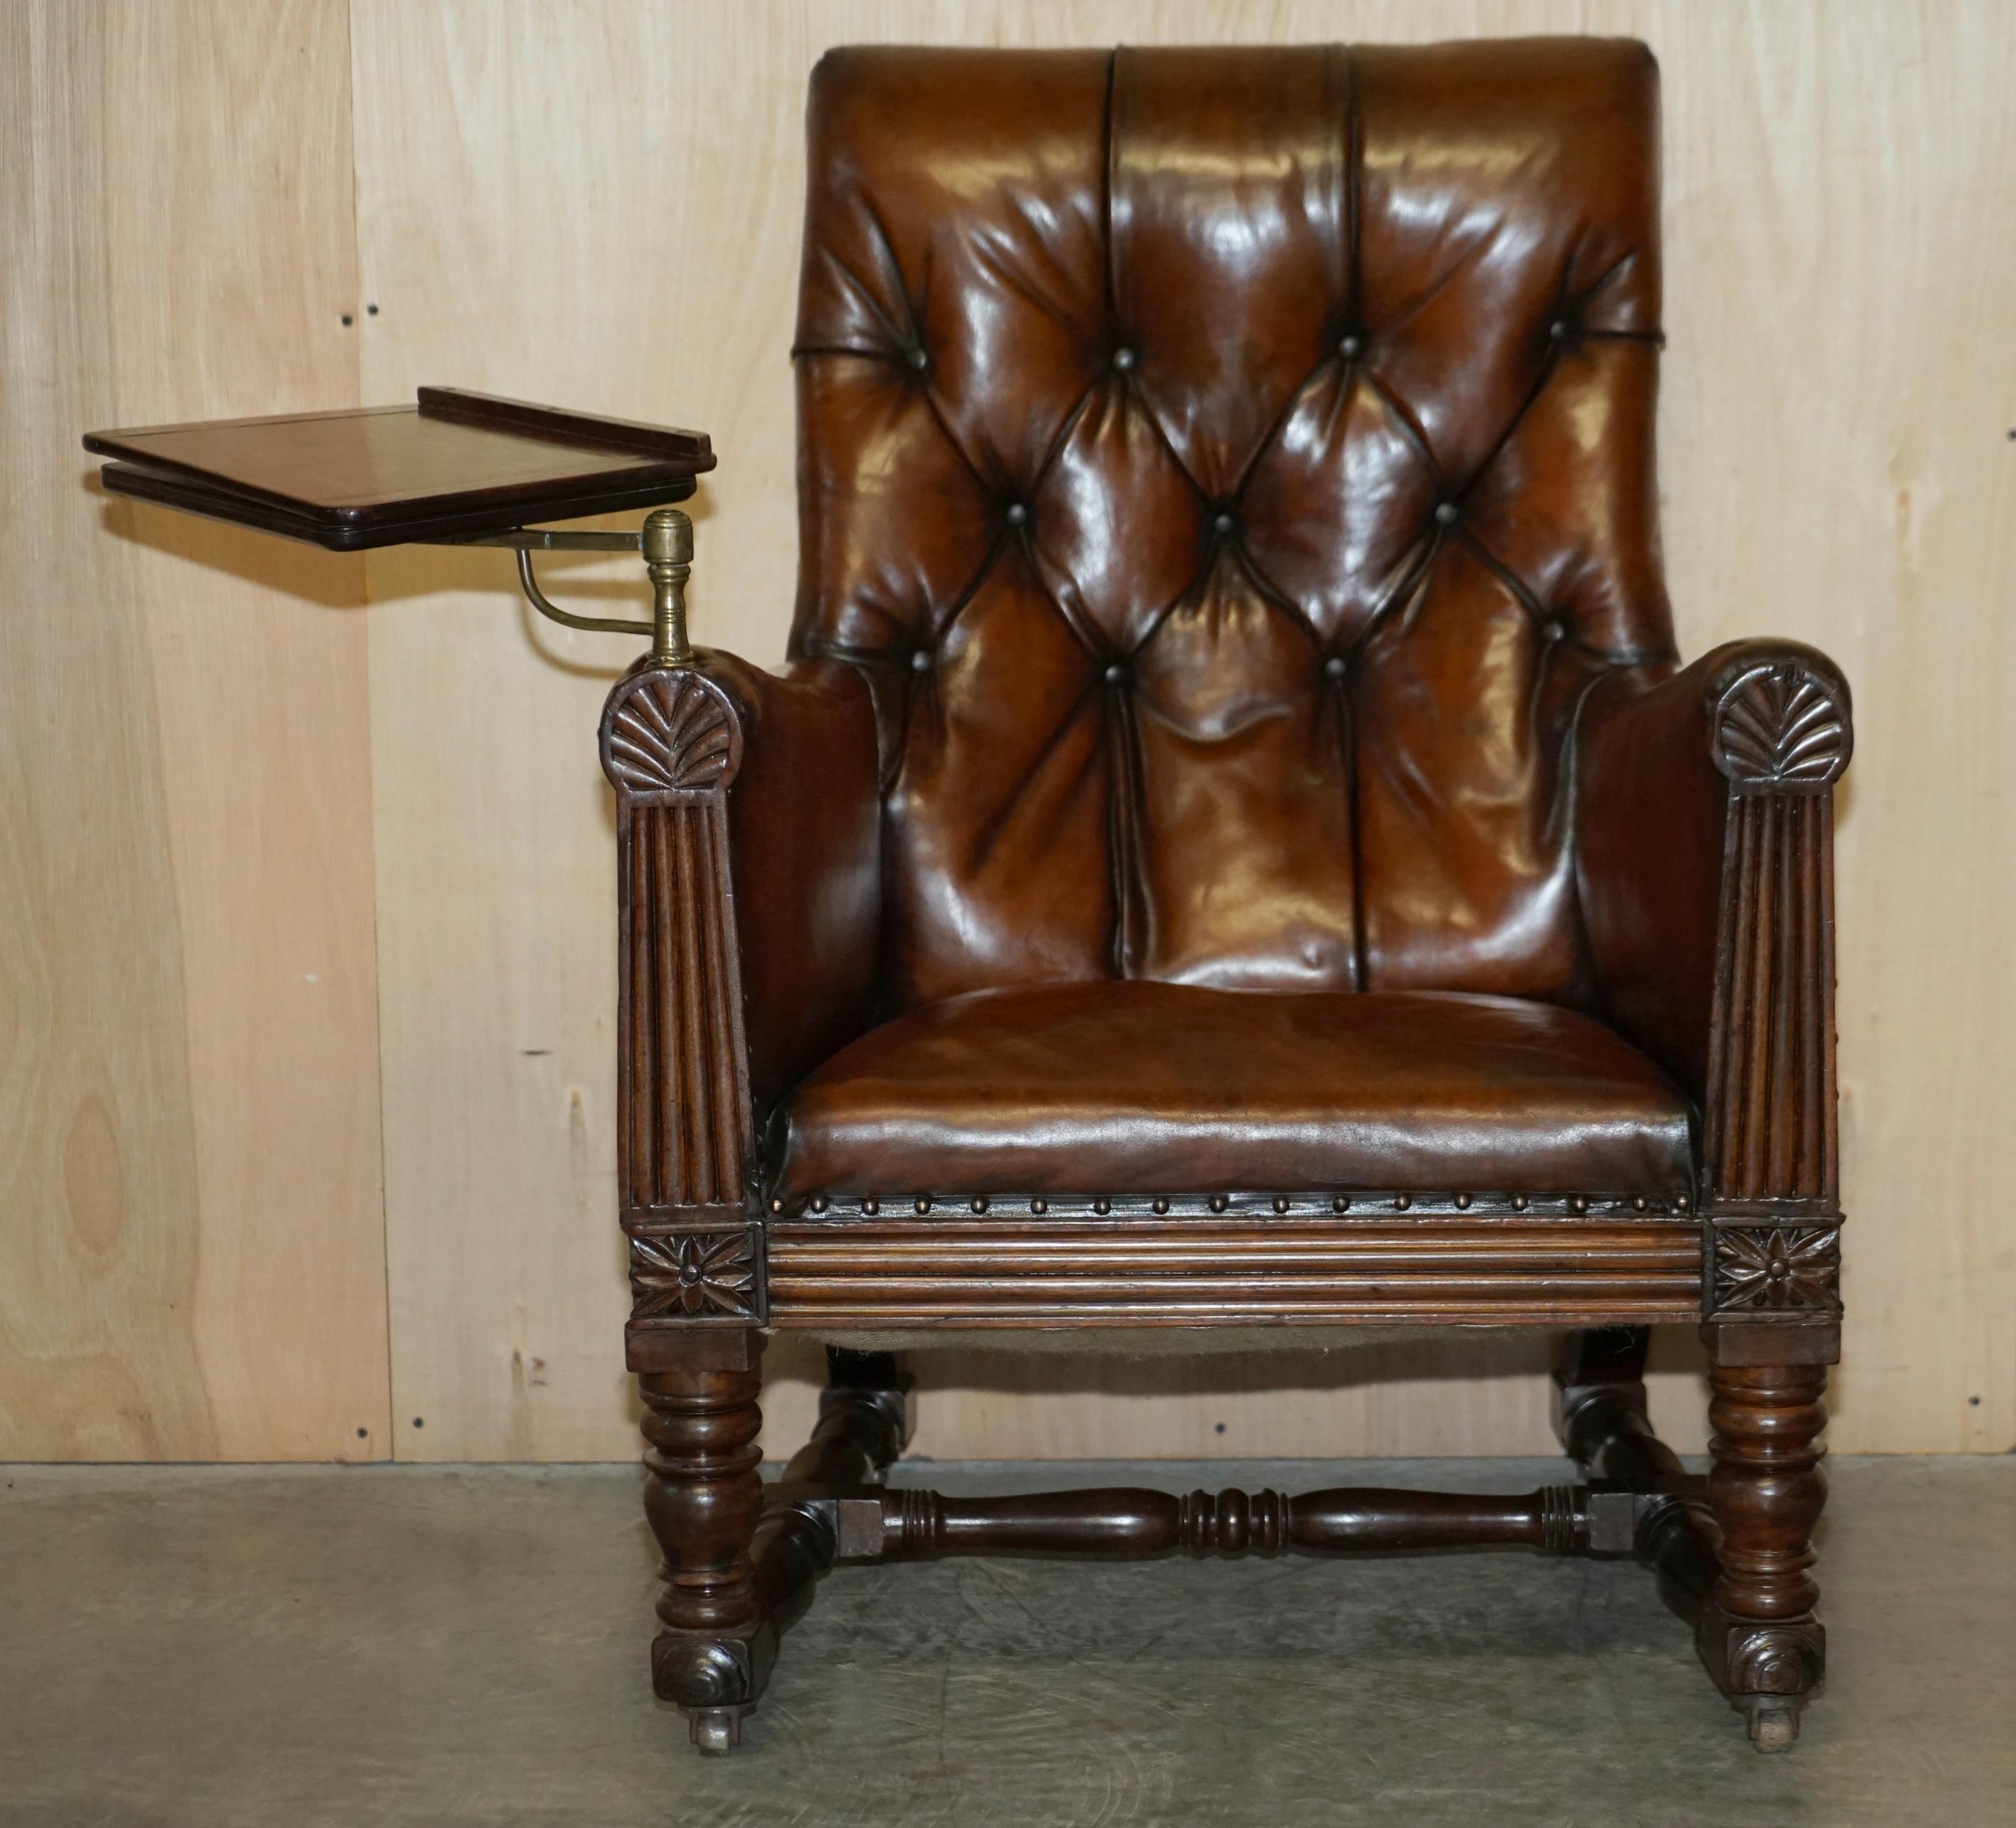 Nous sommes ravis d'offrir à la vente ce superbe fauteuil bibliothèque Regency Chesterfield entièrement restauré en cuir brun cigare teint à la main, avec sa pente de lecture originale en acajou et laiton.

Cette chaise a le look des premières